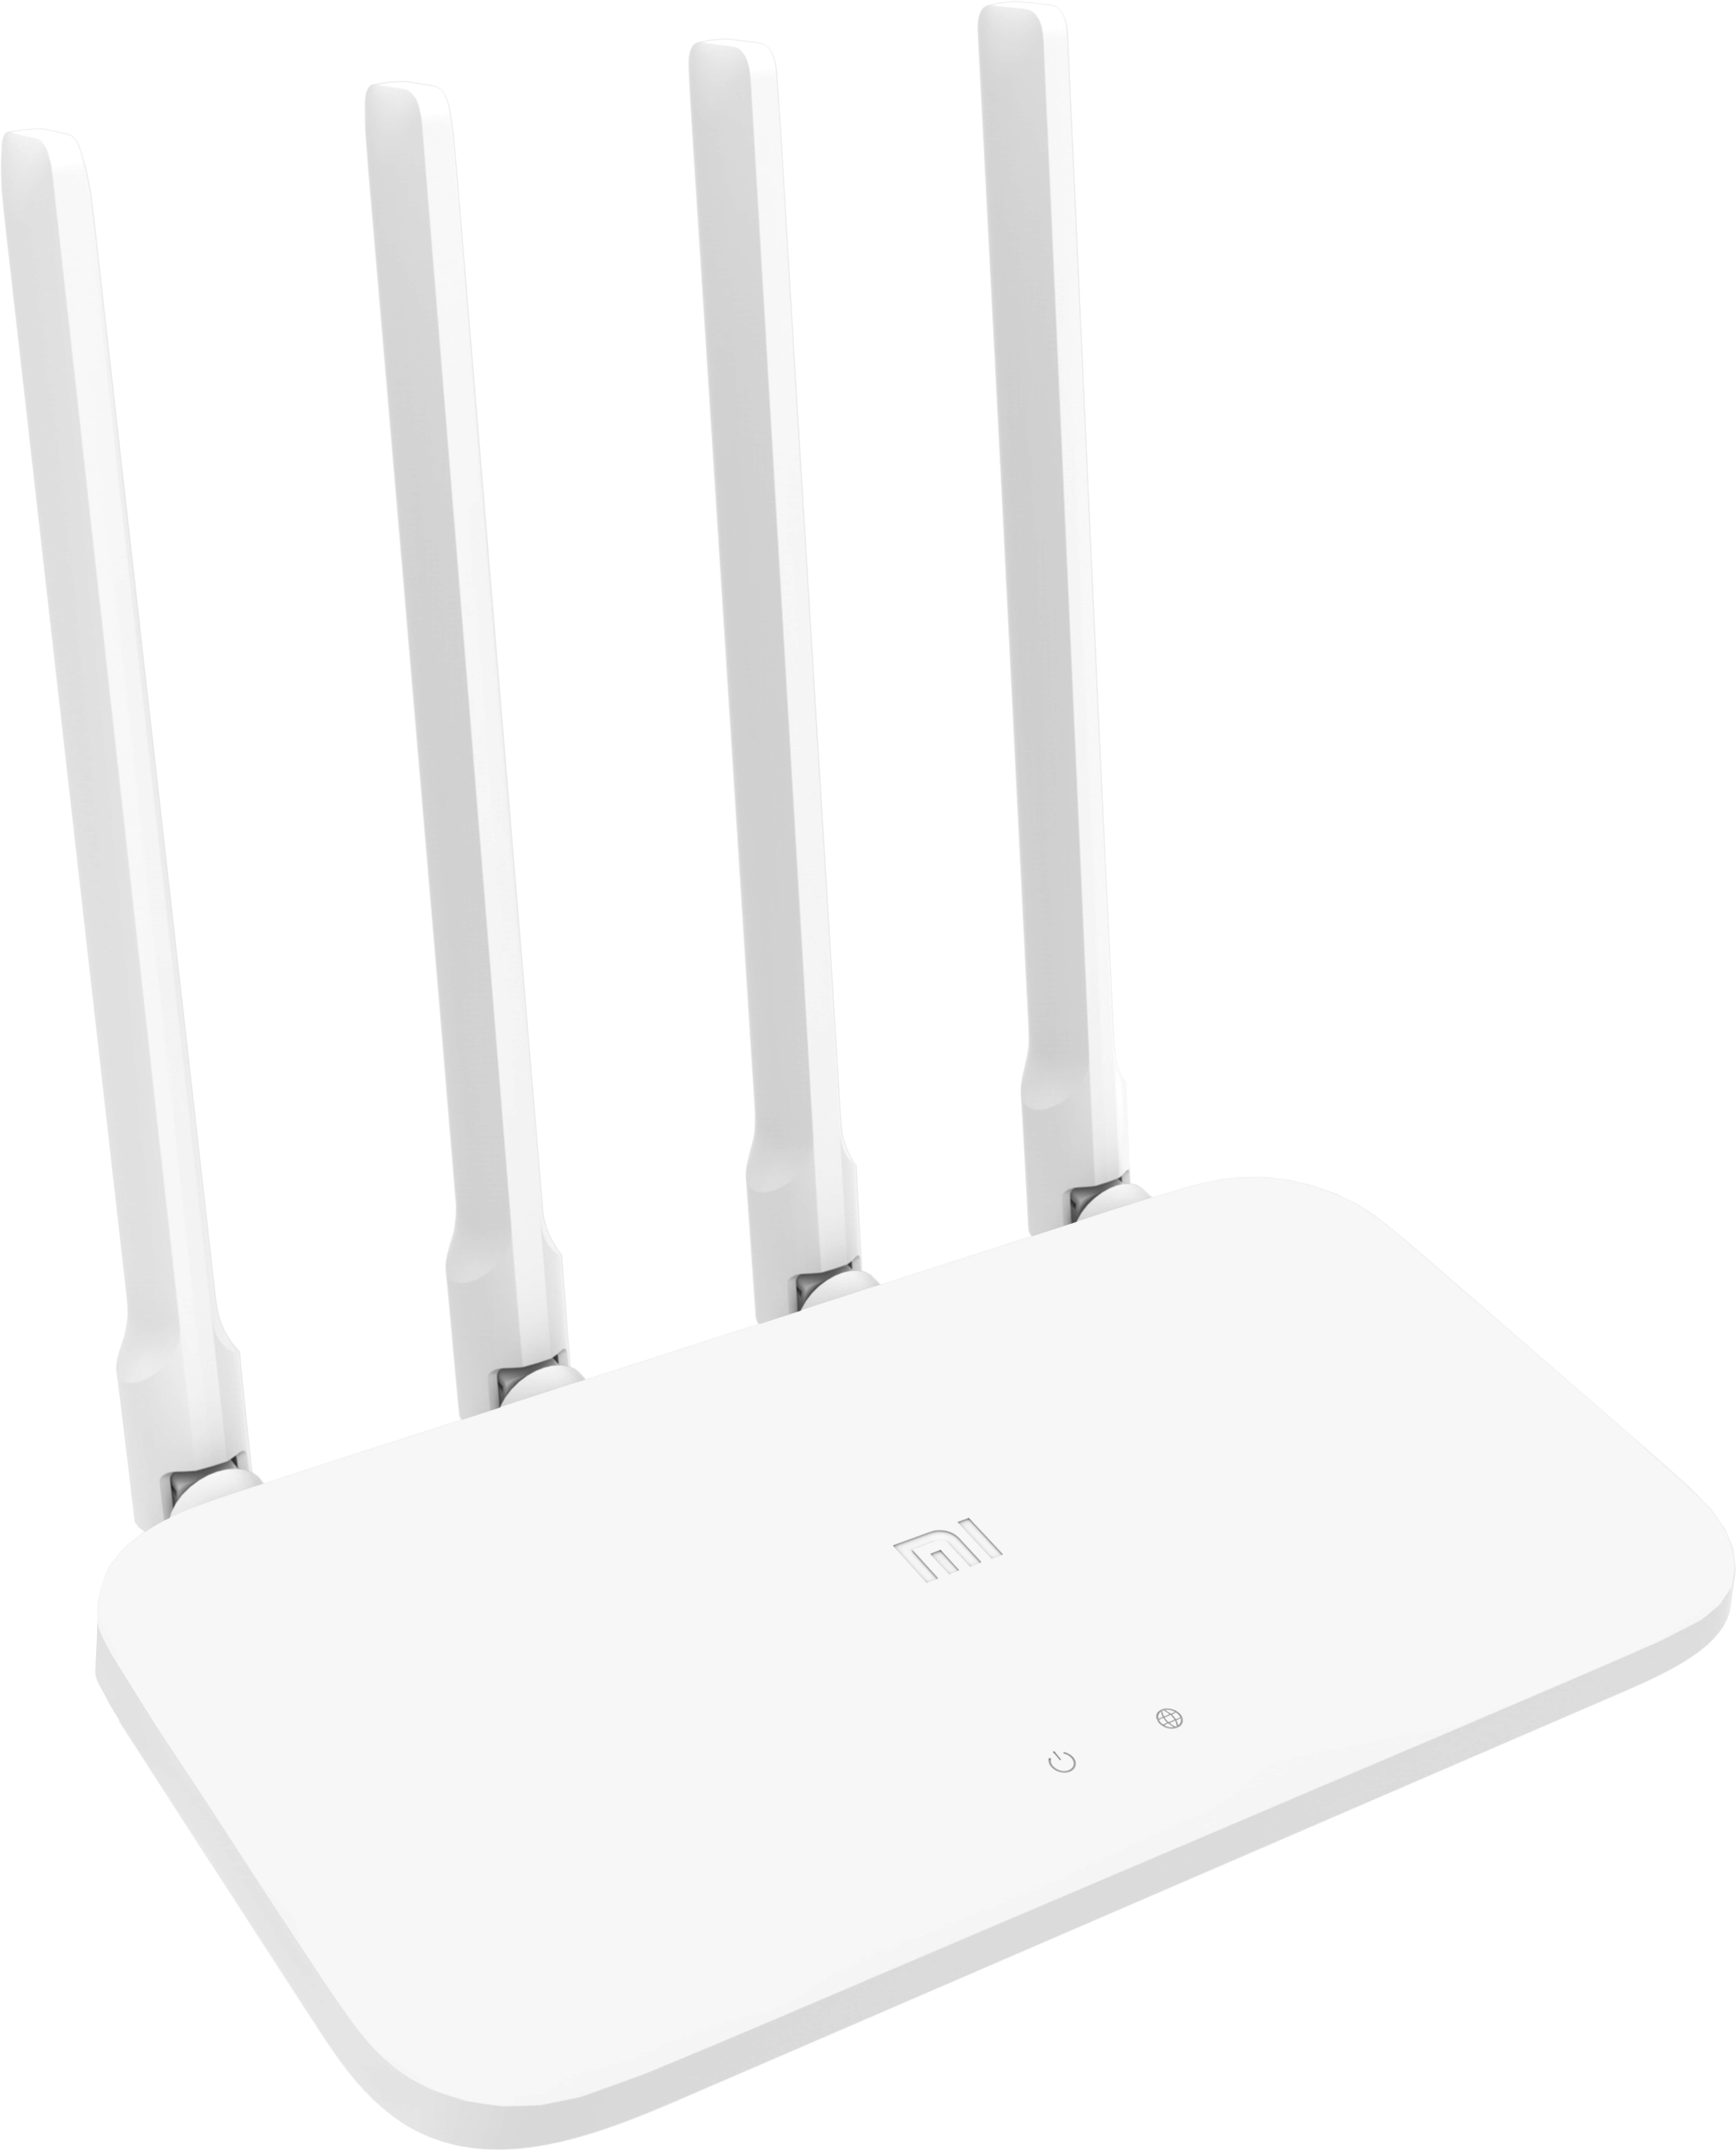 Xiaomi wifi router 4c. Wi-Fi роутер Xiaomi mi Router 4c. Wireless AP+Router mi Router 4c (White) 4antennas 300mbps. Модем Xiaomi. Mi Router 8.